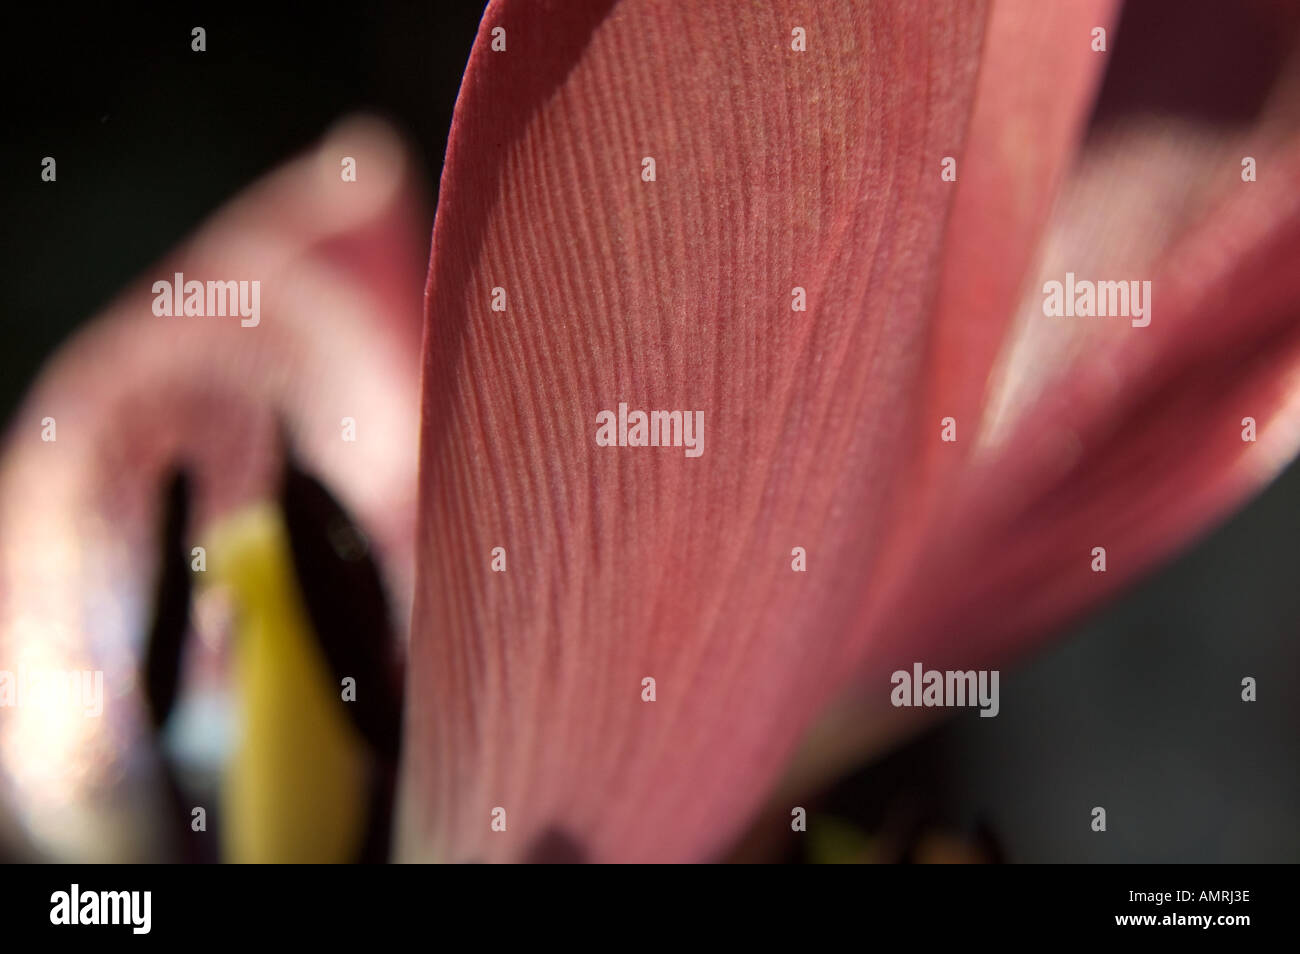 Stempel Fruchtblatt einer Tulpenblüte mit Griffel Narbe und Staubblatt Staubbeutel carpel pistil of a tulip with style stigma Stock Photo